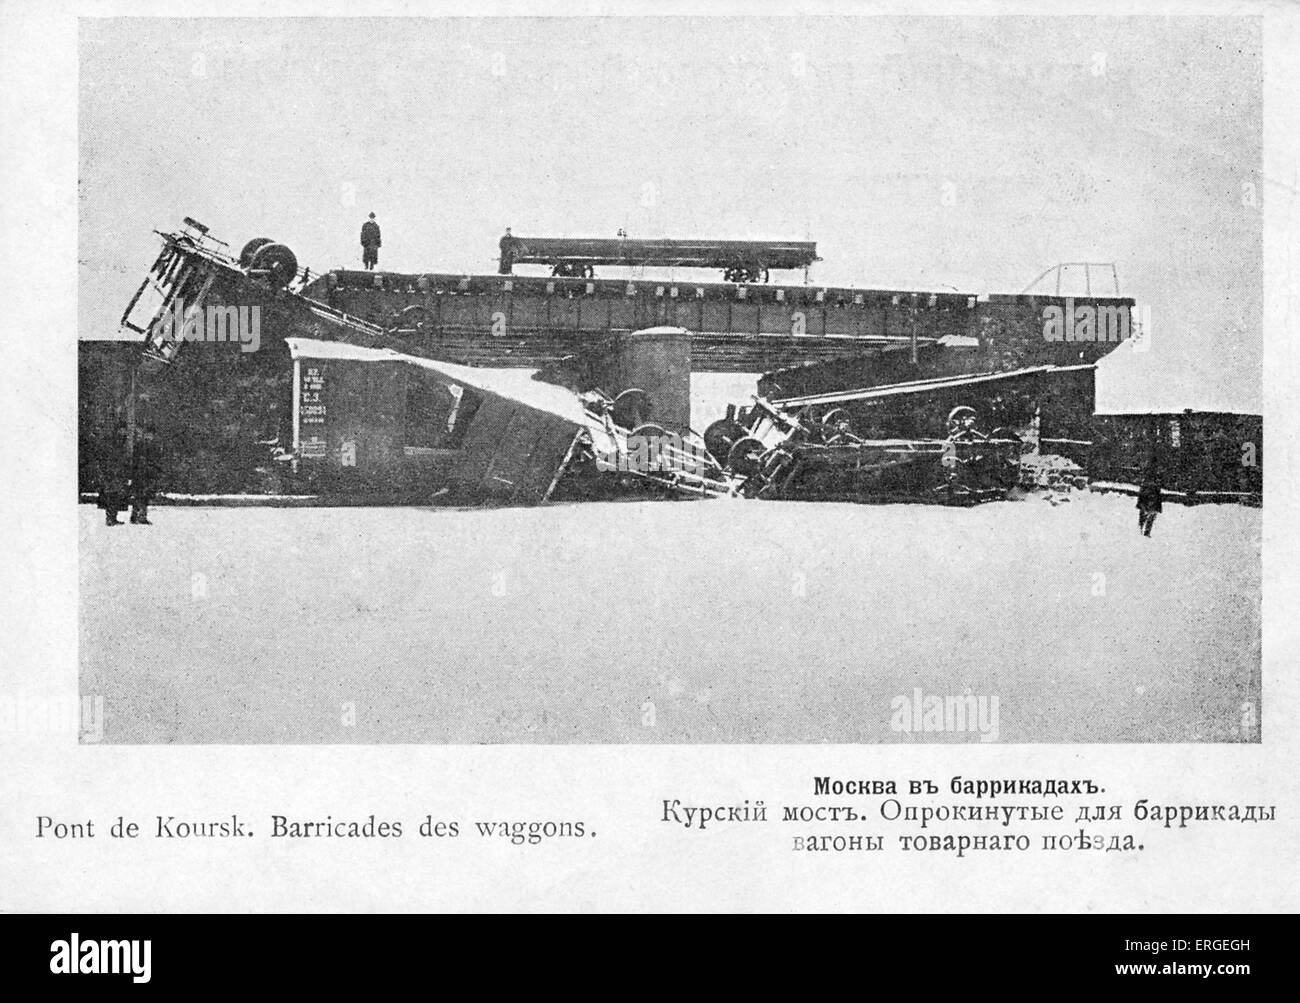 Street barricate durante 1905 Rivoluzione Russa - autocarro barricata al ponte di Kursk, Mosca. Ondata di massa politico e sociale che si diffondono attraverso vaste aree dell'impero russo (1905 - 1908). Sconfitto da Nicholas II. Foto Stock